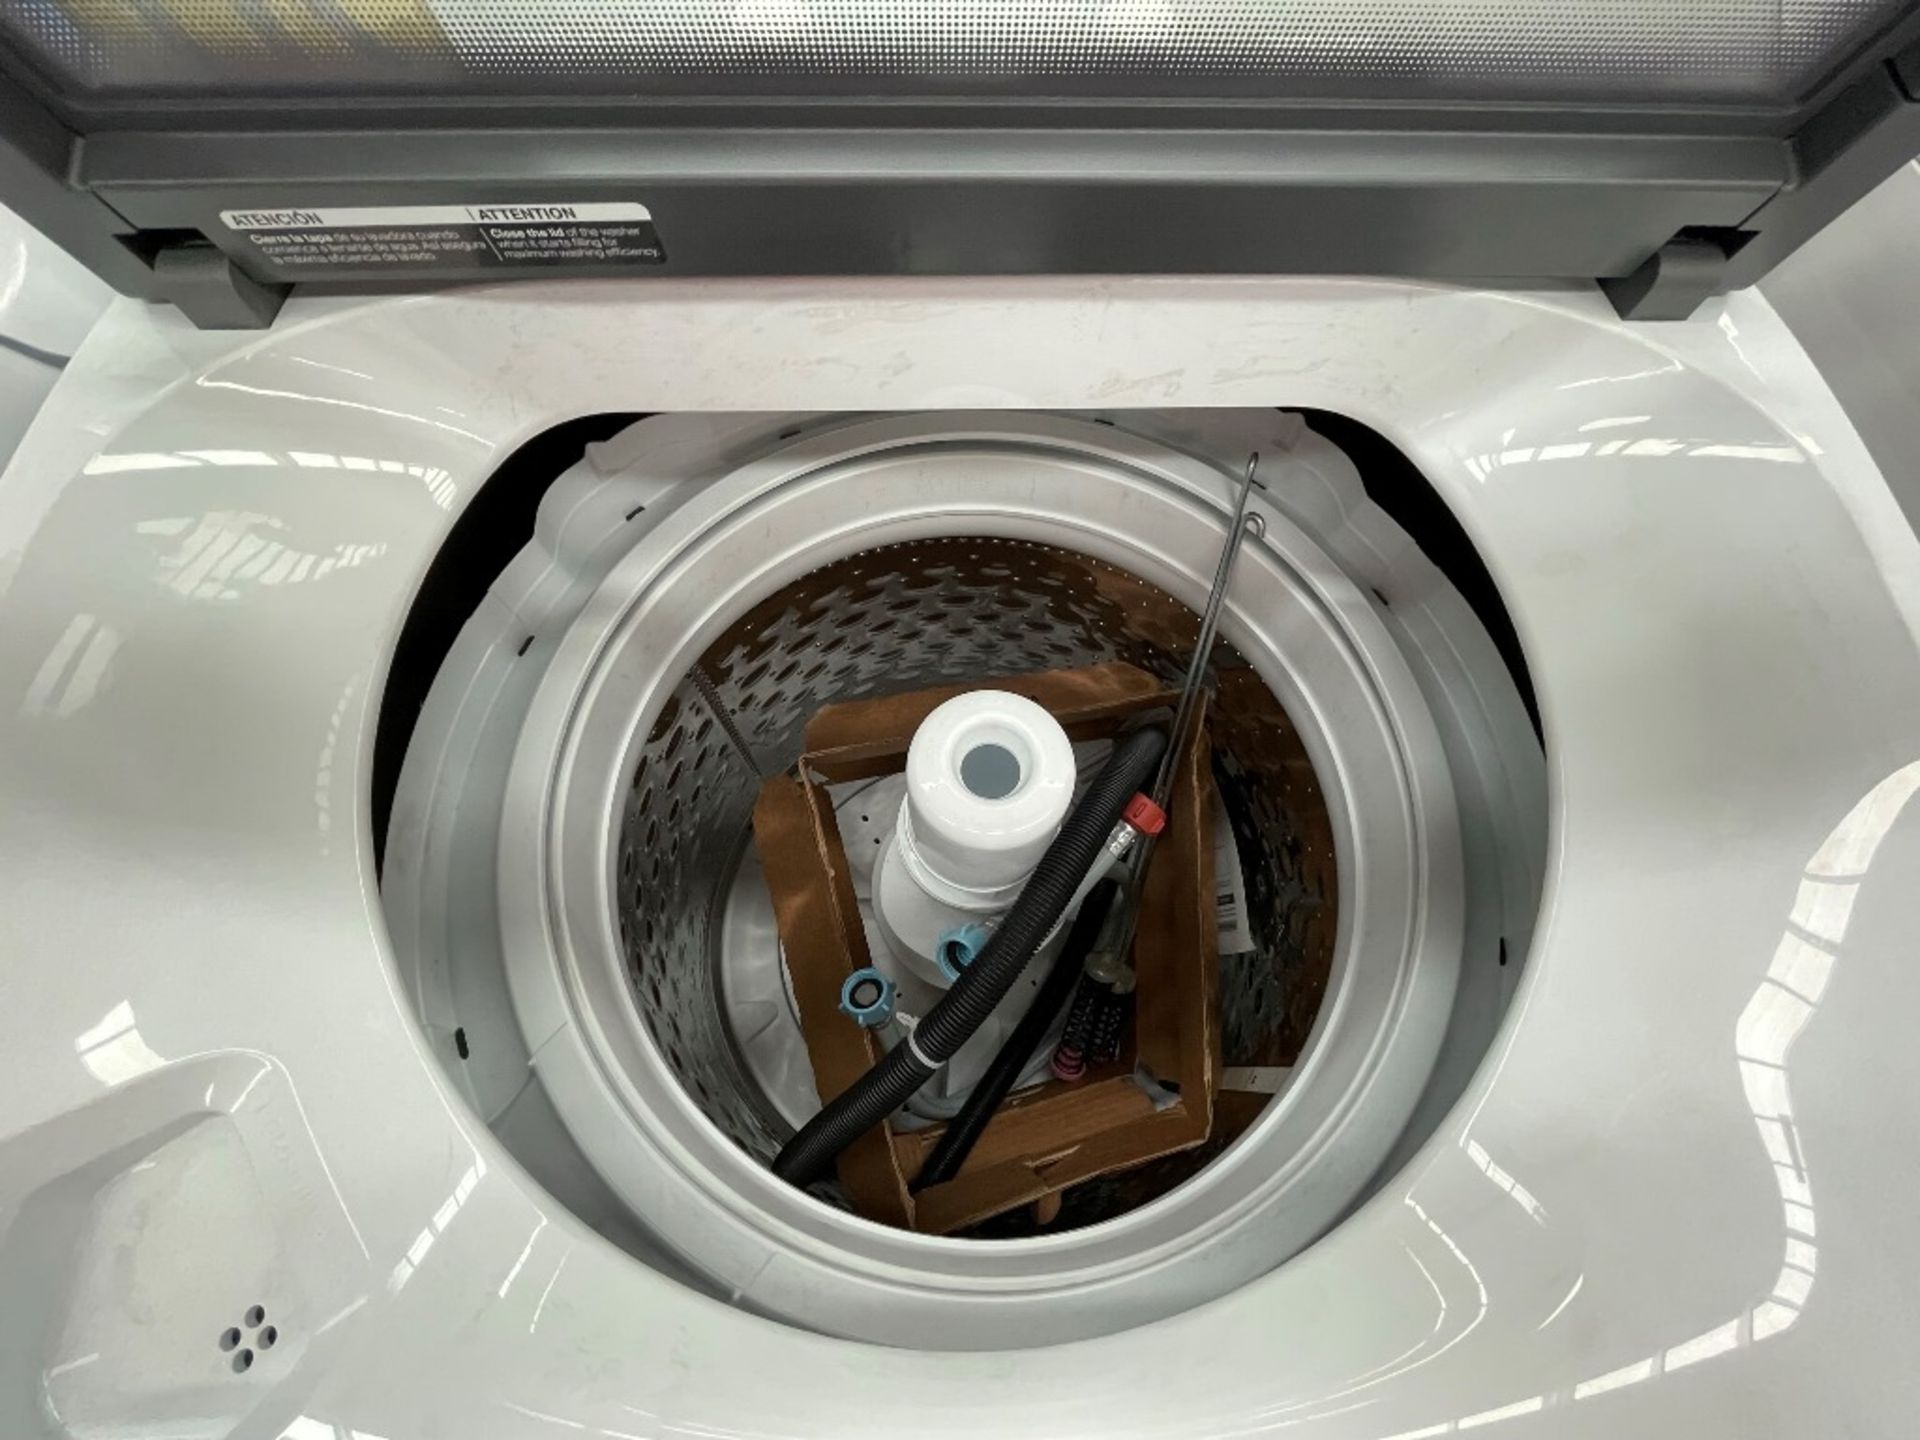 Lote de 2 Lavadoras contiene: 1 lavadora de 19 KG, Marca WINIA, Modelo WHF19F3YY2AH, Serie 802434, - Image 4 of 10